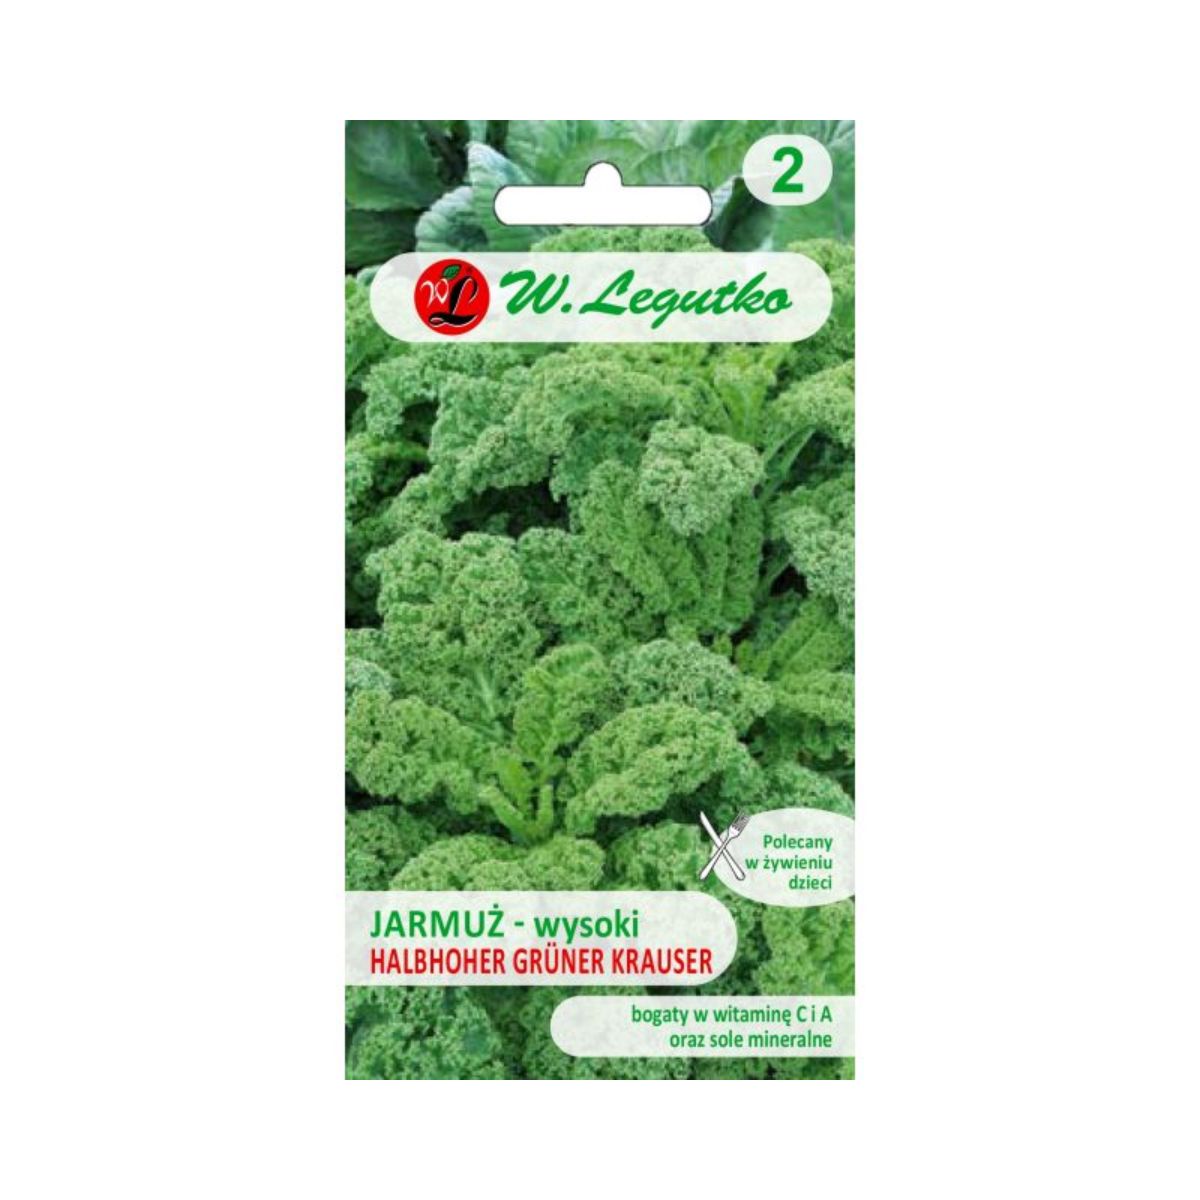 Varza - Seminte de varza Kale Gruner, 0,5 gr, LEGUTKO, hectarul.ro